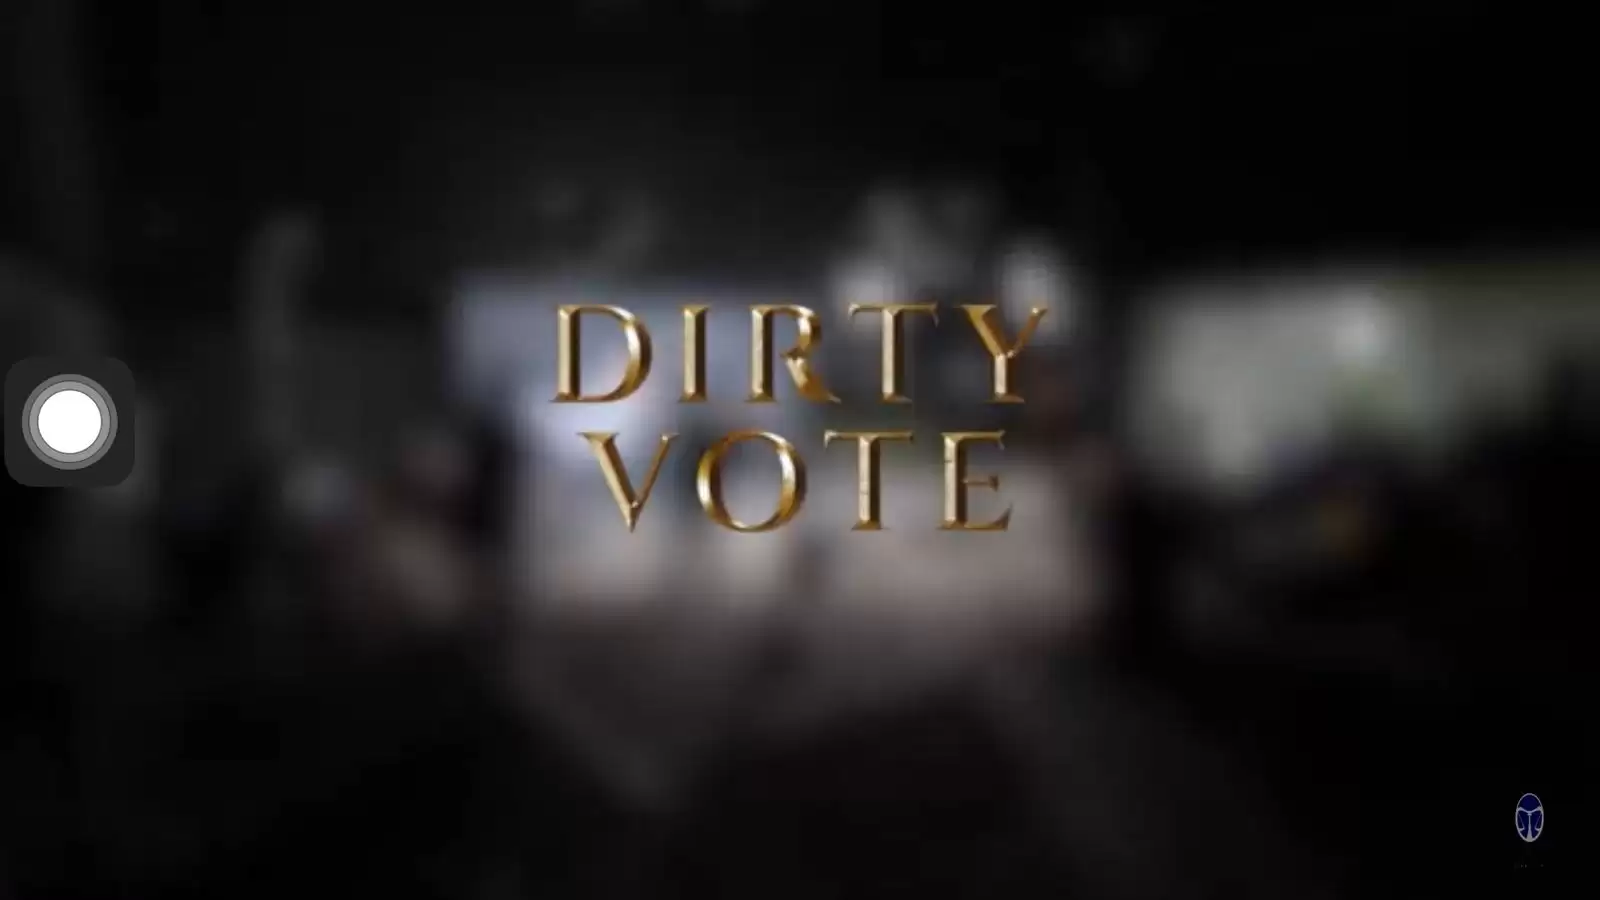 Dirty Vote, disutradarai oleh Dandy Laksono dan tayang di youtube pukul 11.39 WIB. (Foto: MI/Zefry - Tangkap Layar)